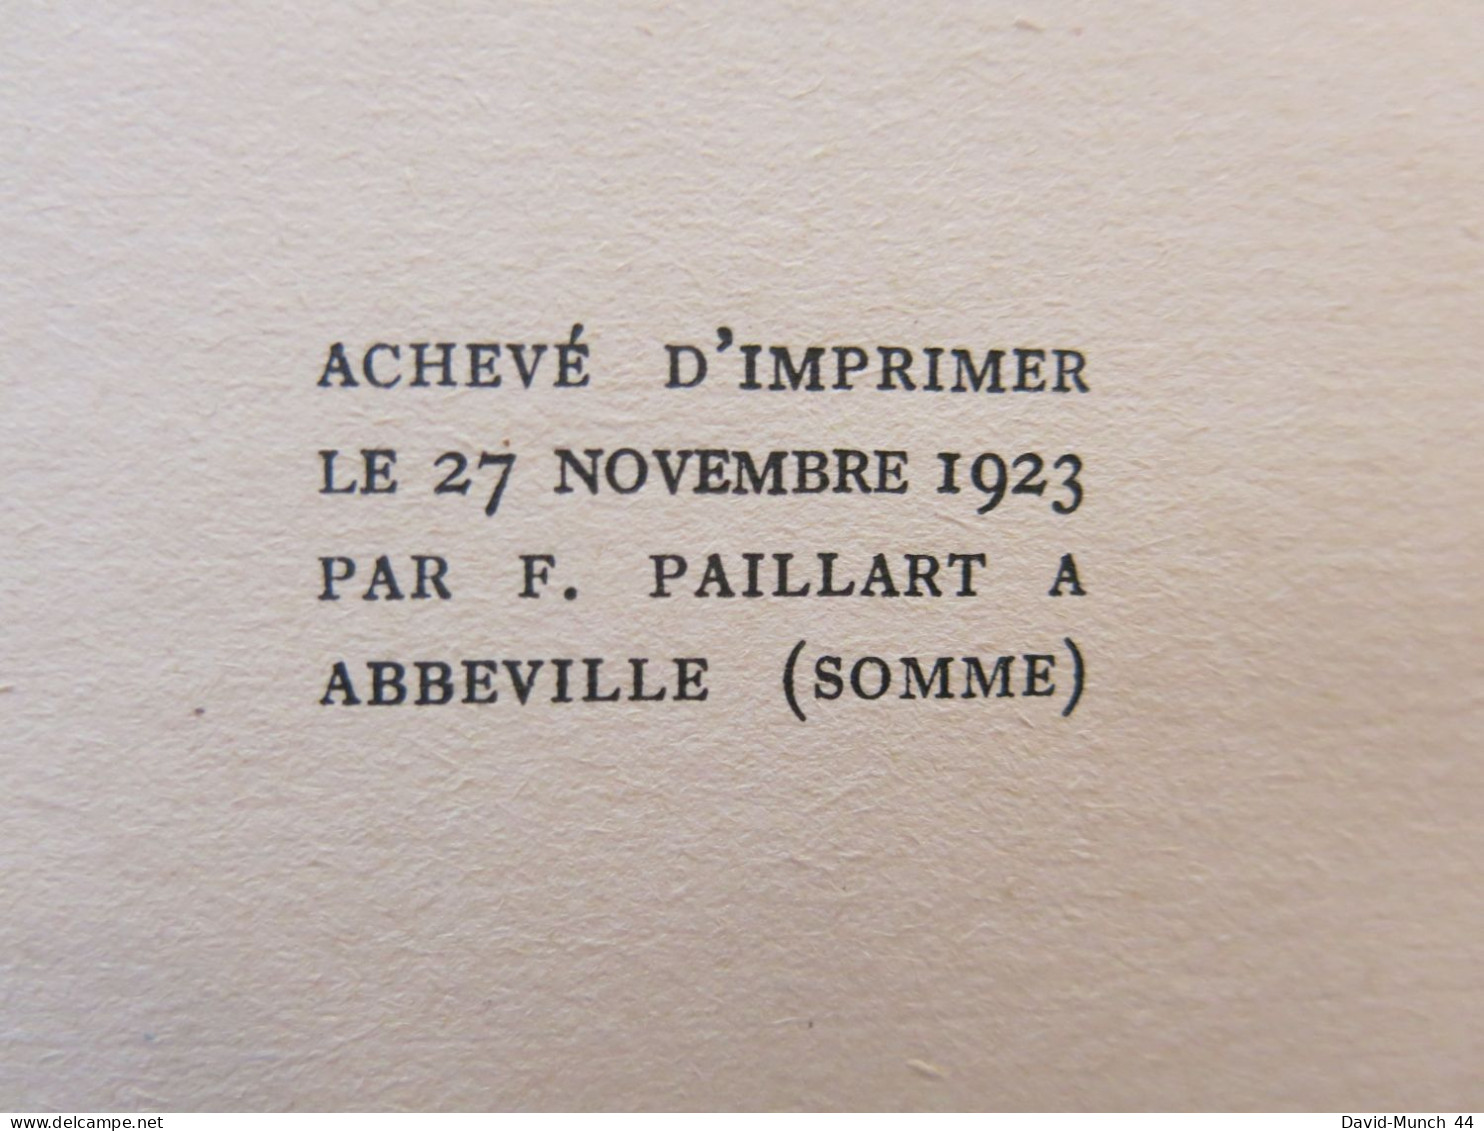 Dépaysements de Robert de Traz. Librairie Grasset, "Les cahiers verts"-29. 1923, exemplaire sur Vergé Bouffant numéroté